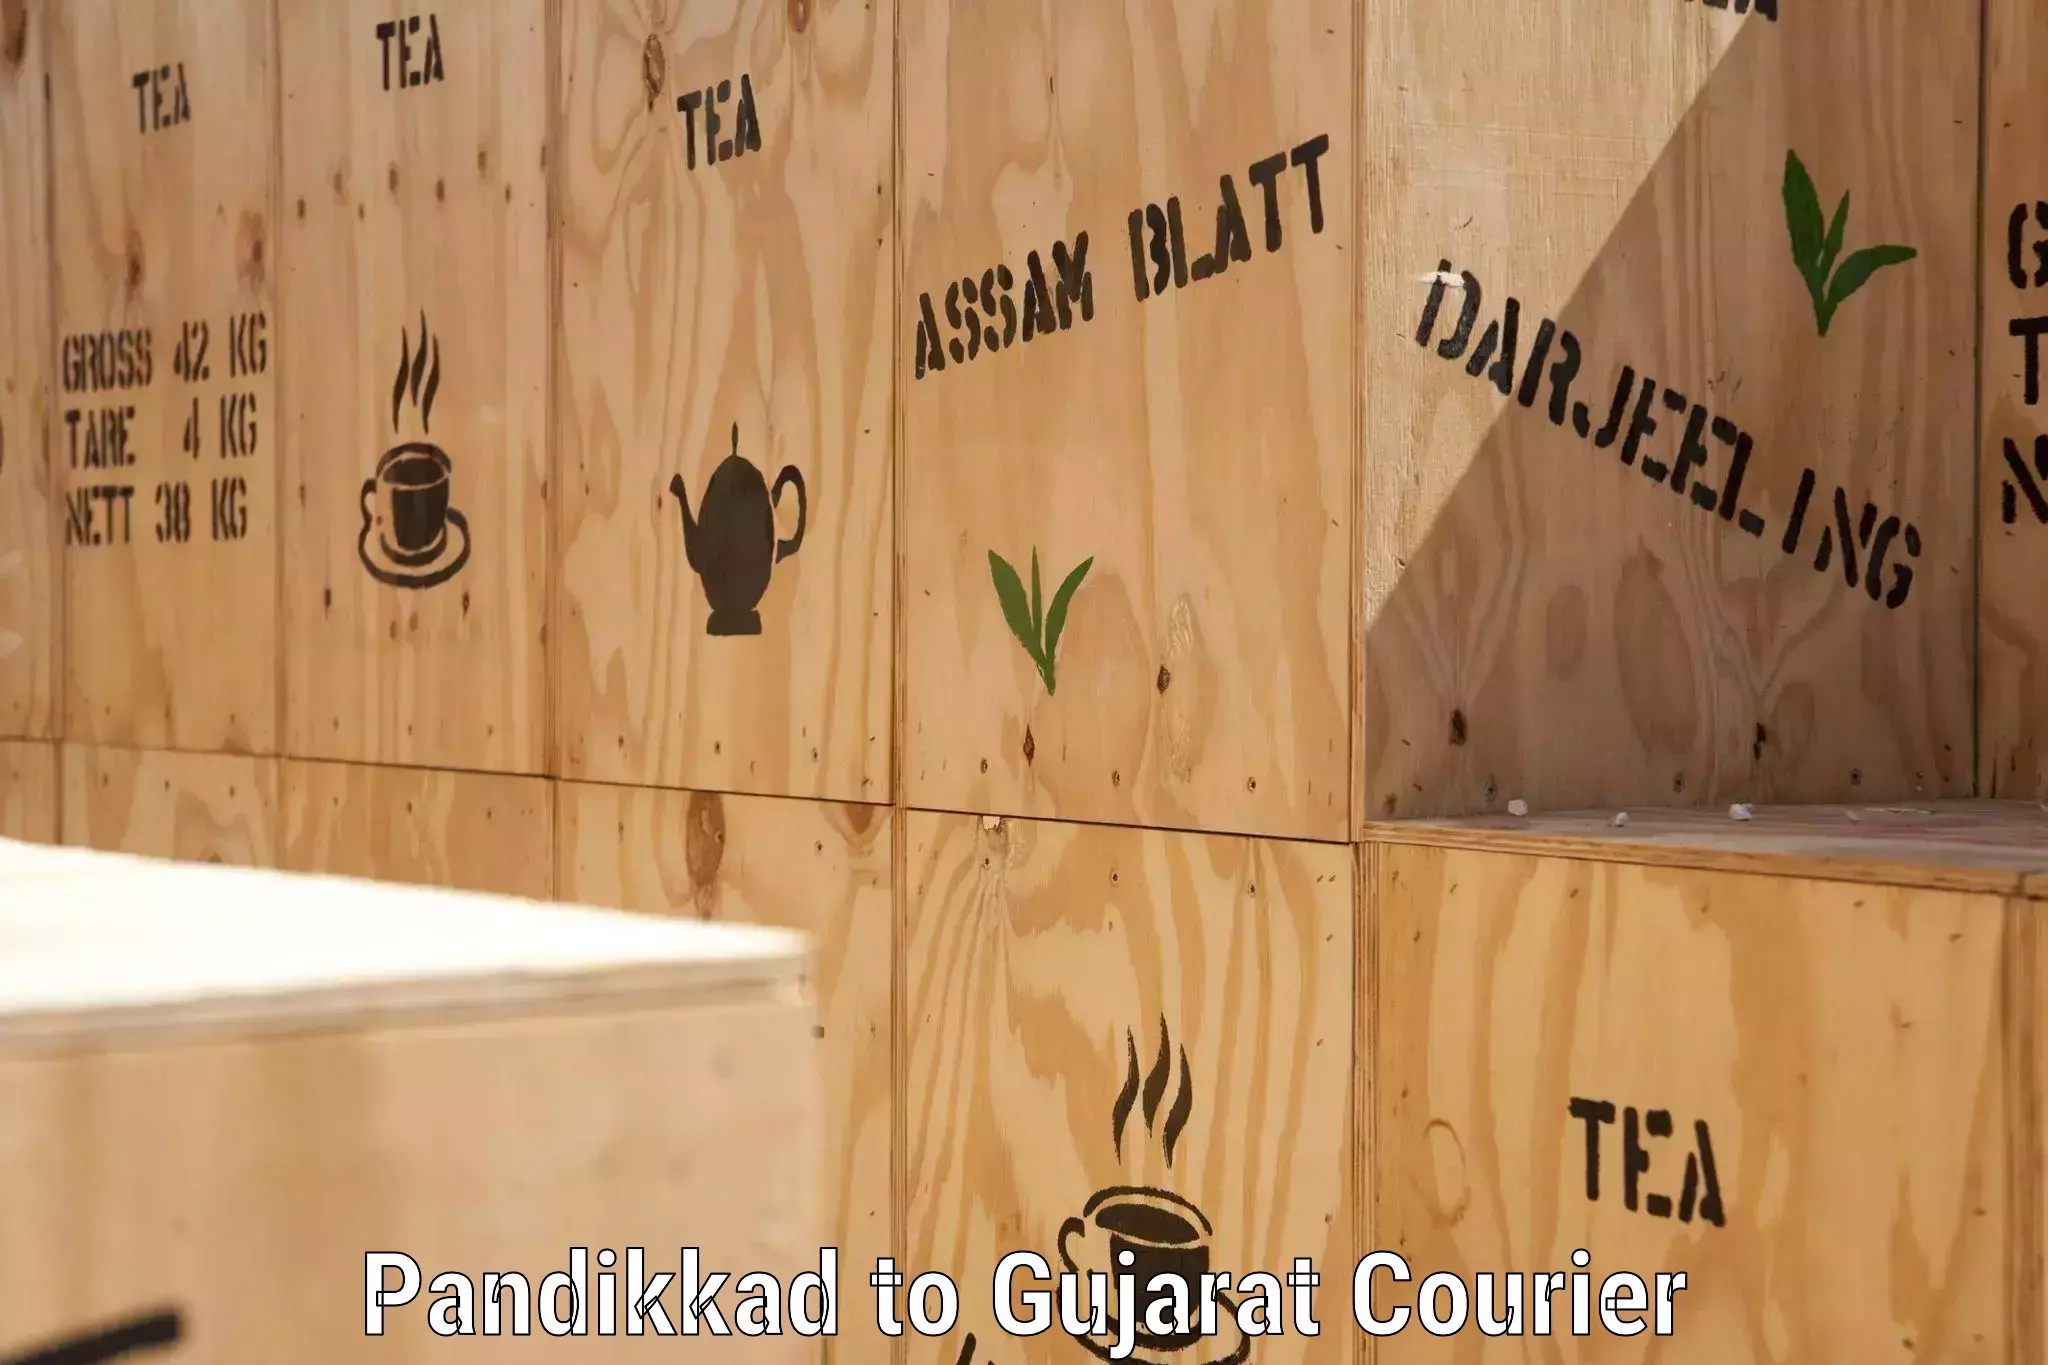 Flexible delivery schedules Pandikkad to Gujarat